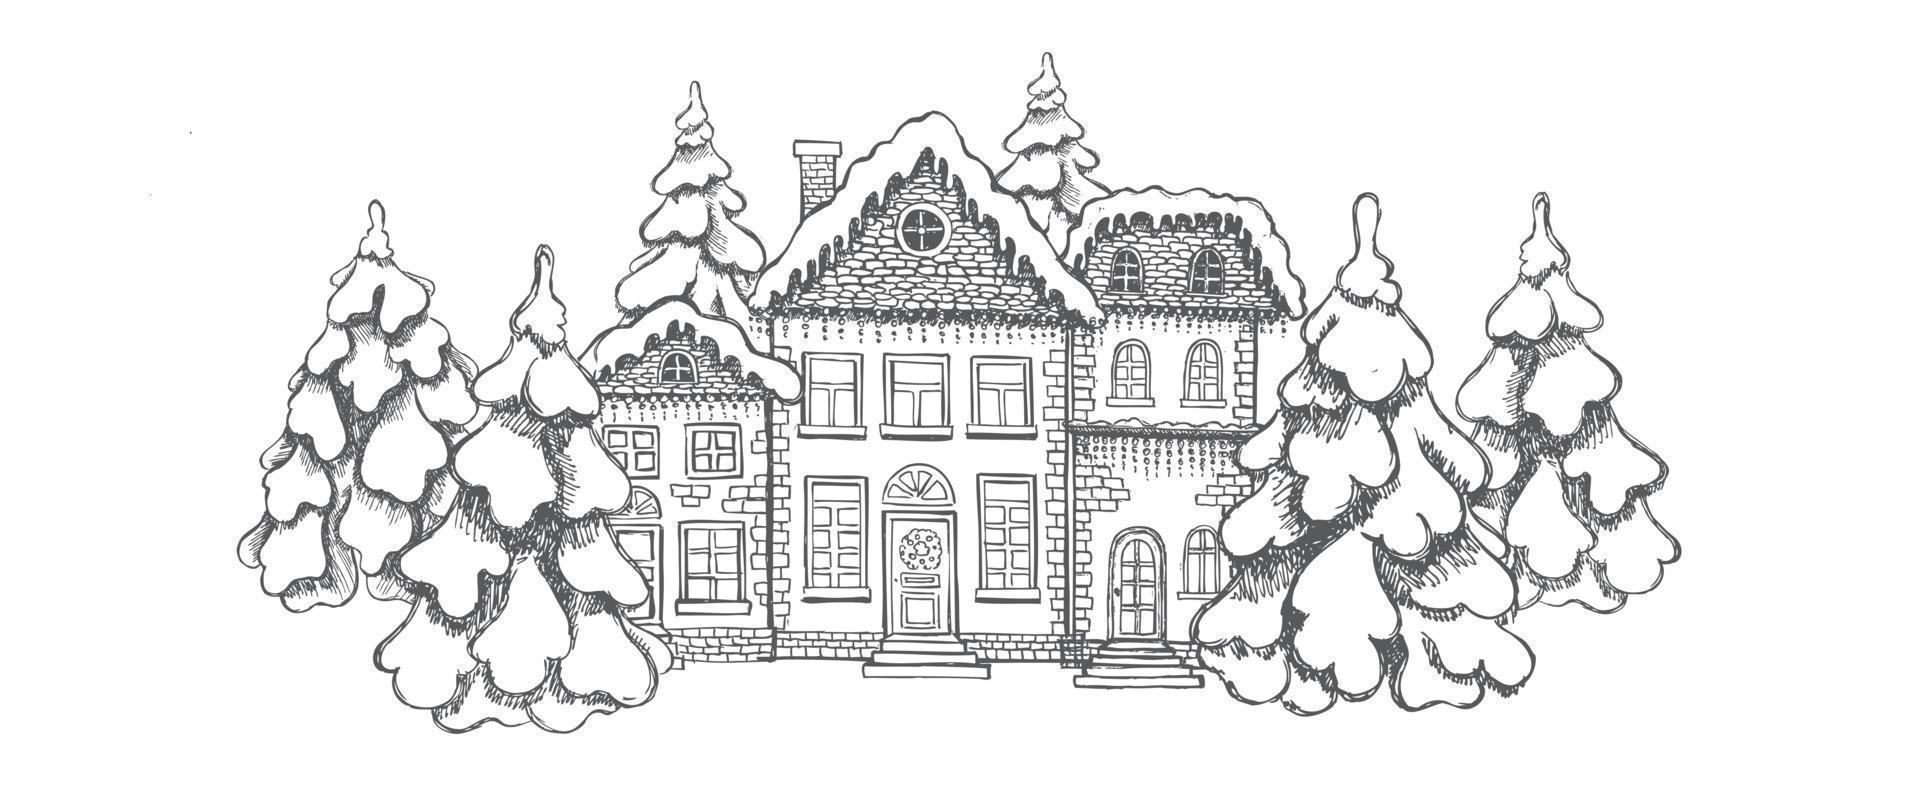 illustrazione di case. biglietto di auguri di natale. insieme di edifici disegnati a mano. vettore